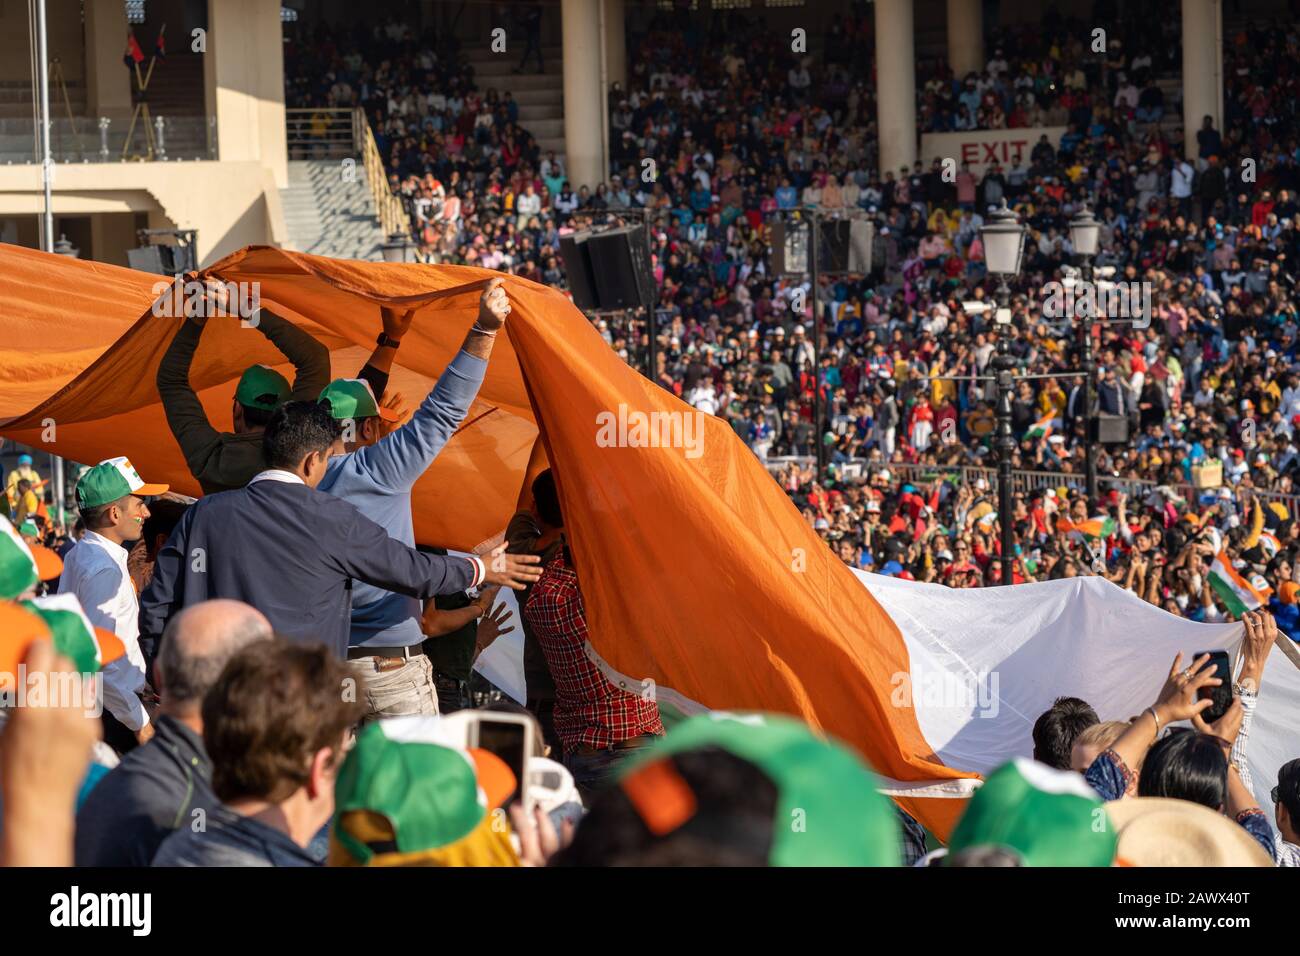 Amritsar, Inde - Fébuary 8, 2020: Les foules dans le stade passent et tiennent un drapeau indien en préparation de la cérémonie de clôture de la frontière de Wagah W Banque D'Images